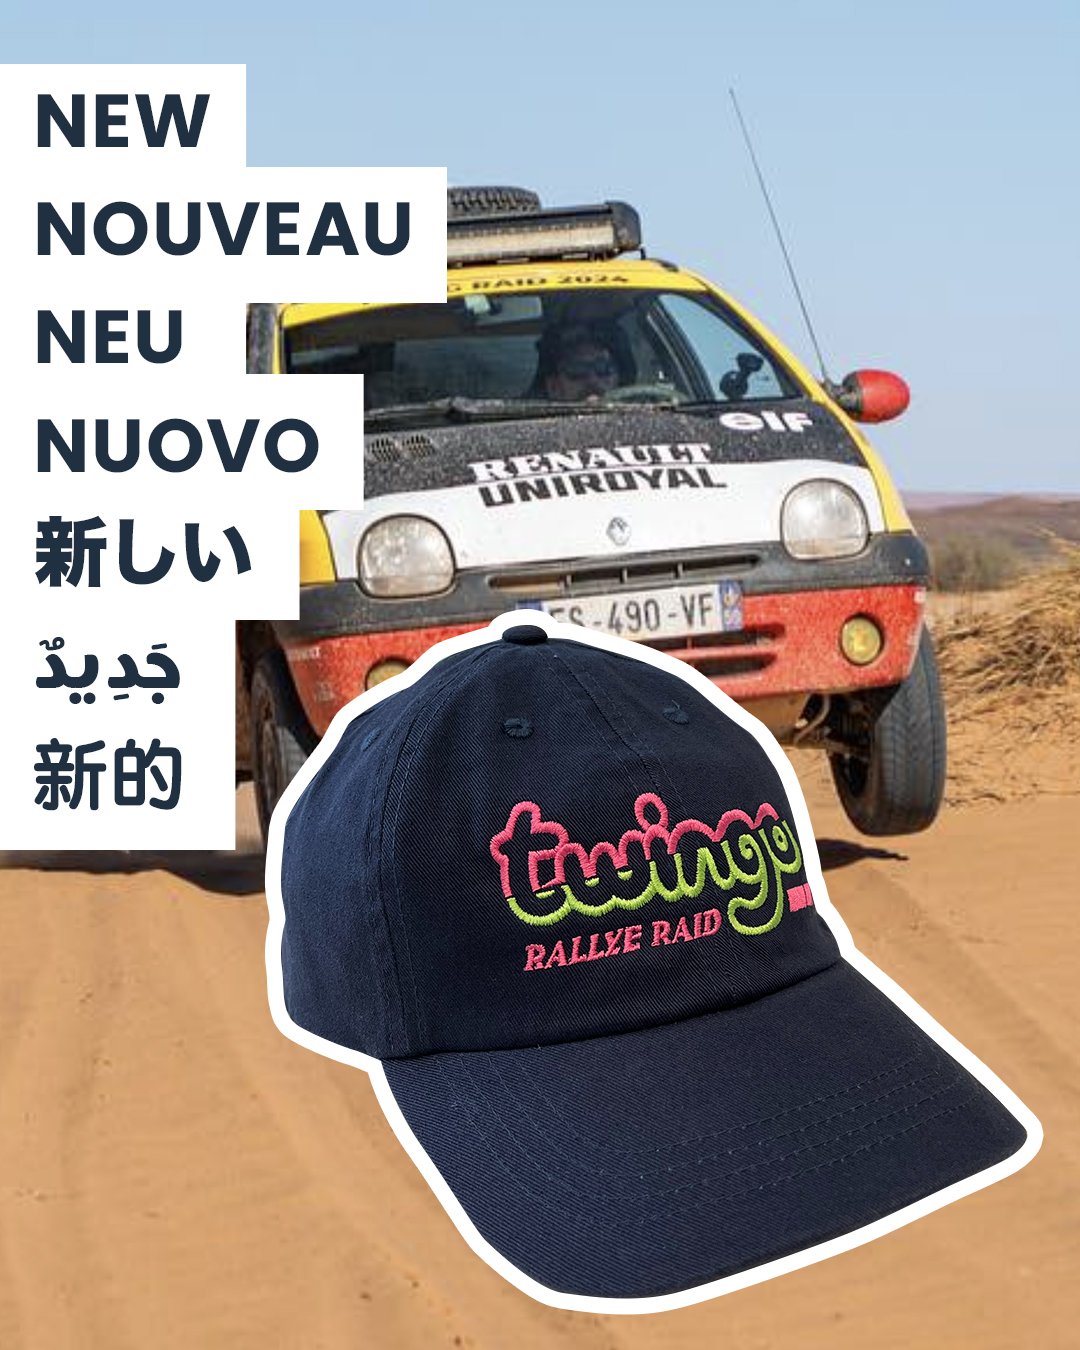 Image of Twingo Rallye Raid Cap